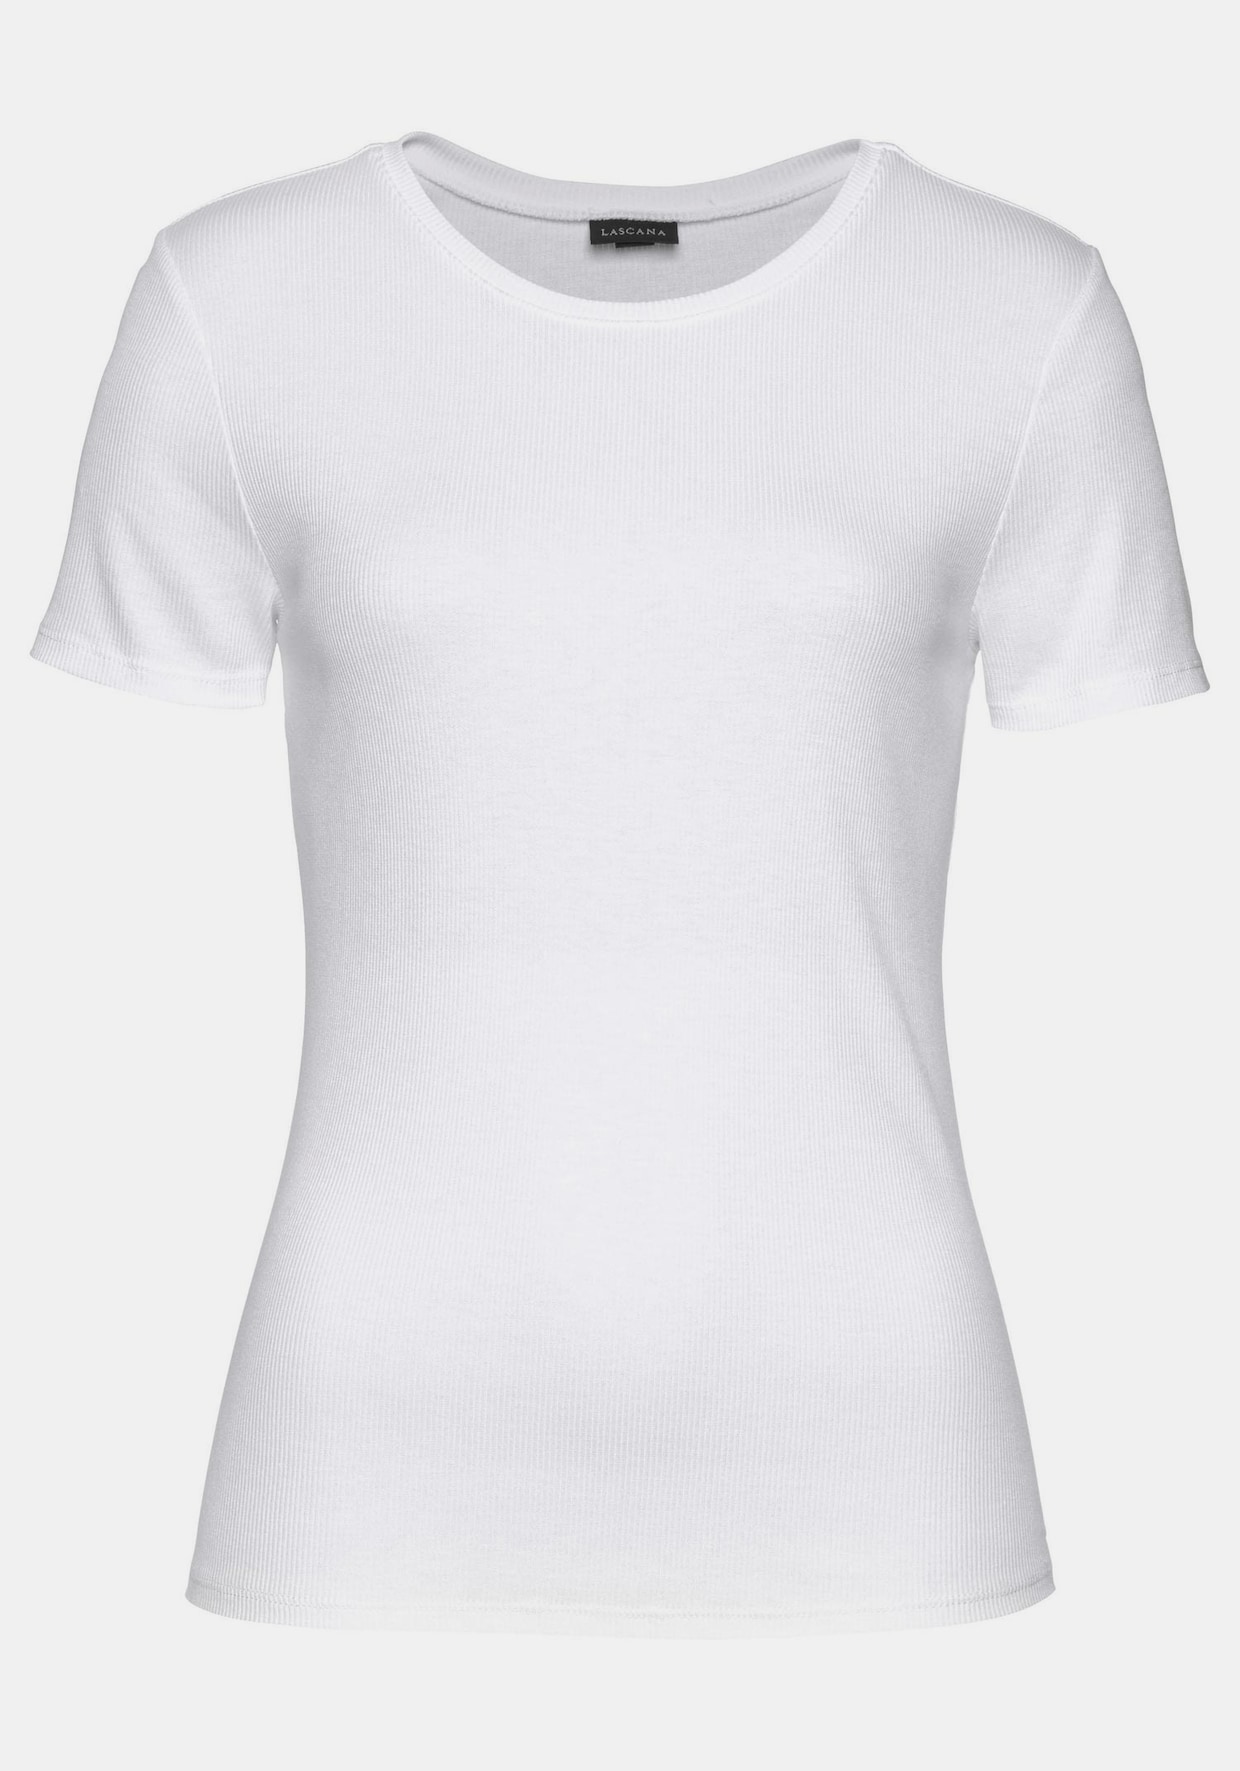 LASCANA T-Shirt - 1x weiß + 1x schwarz